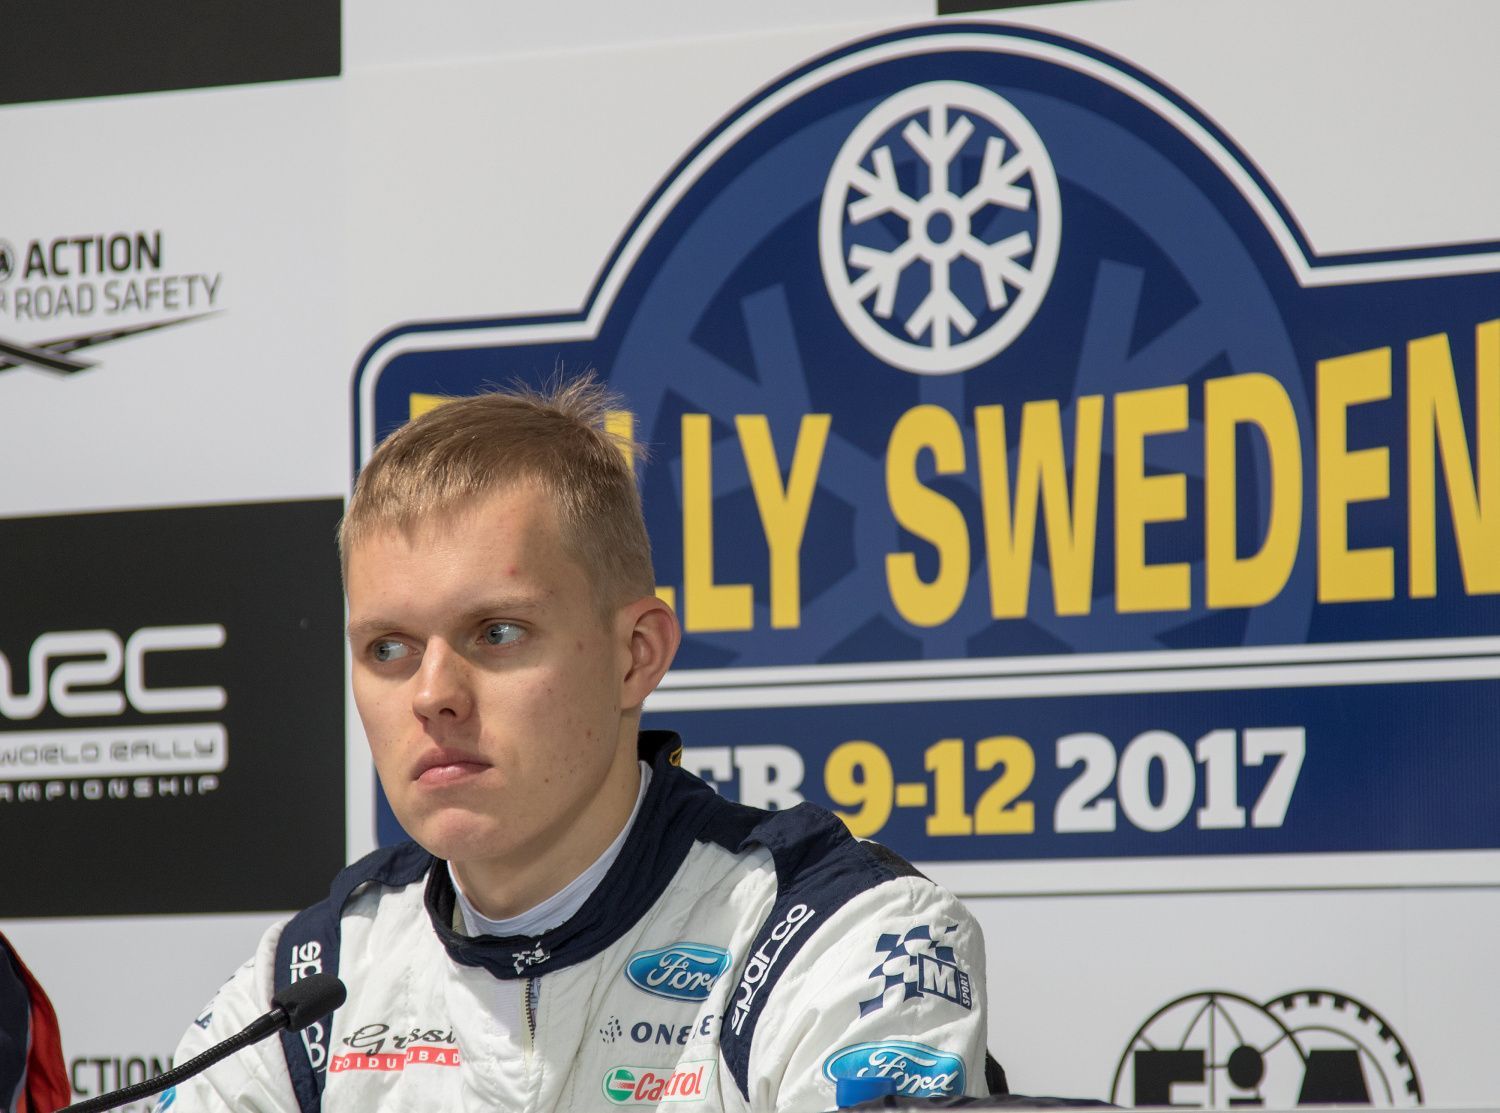 Švédská rallye 2017: Ott Tänak, Ford